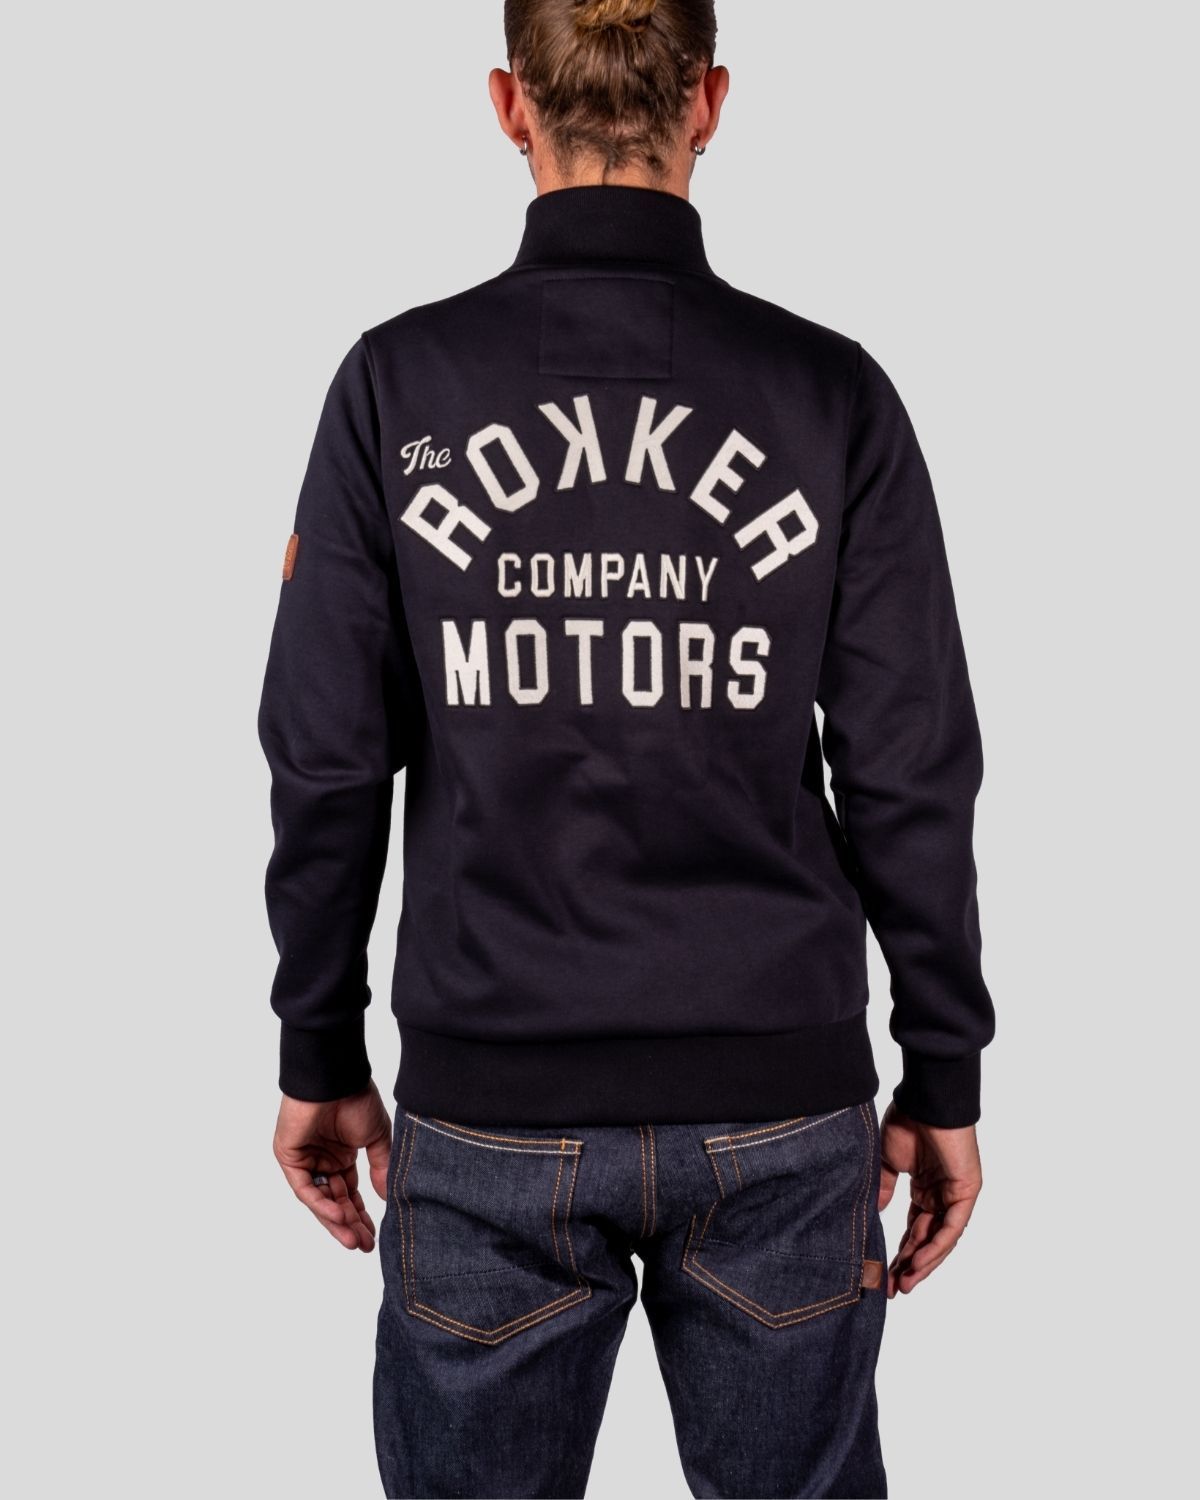 ROKKER Motors Zip Jacket Hoodie The Rokker Company 